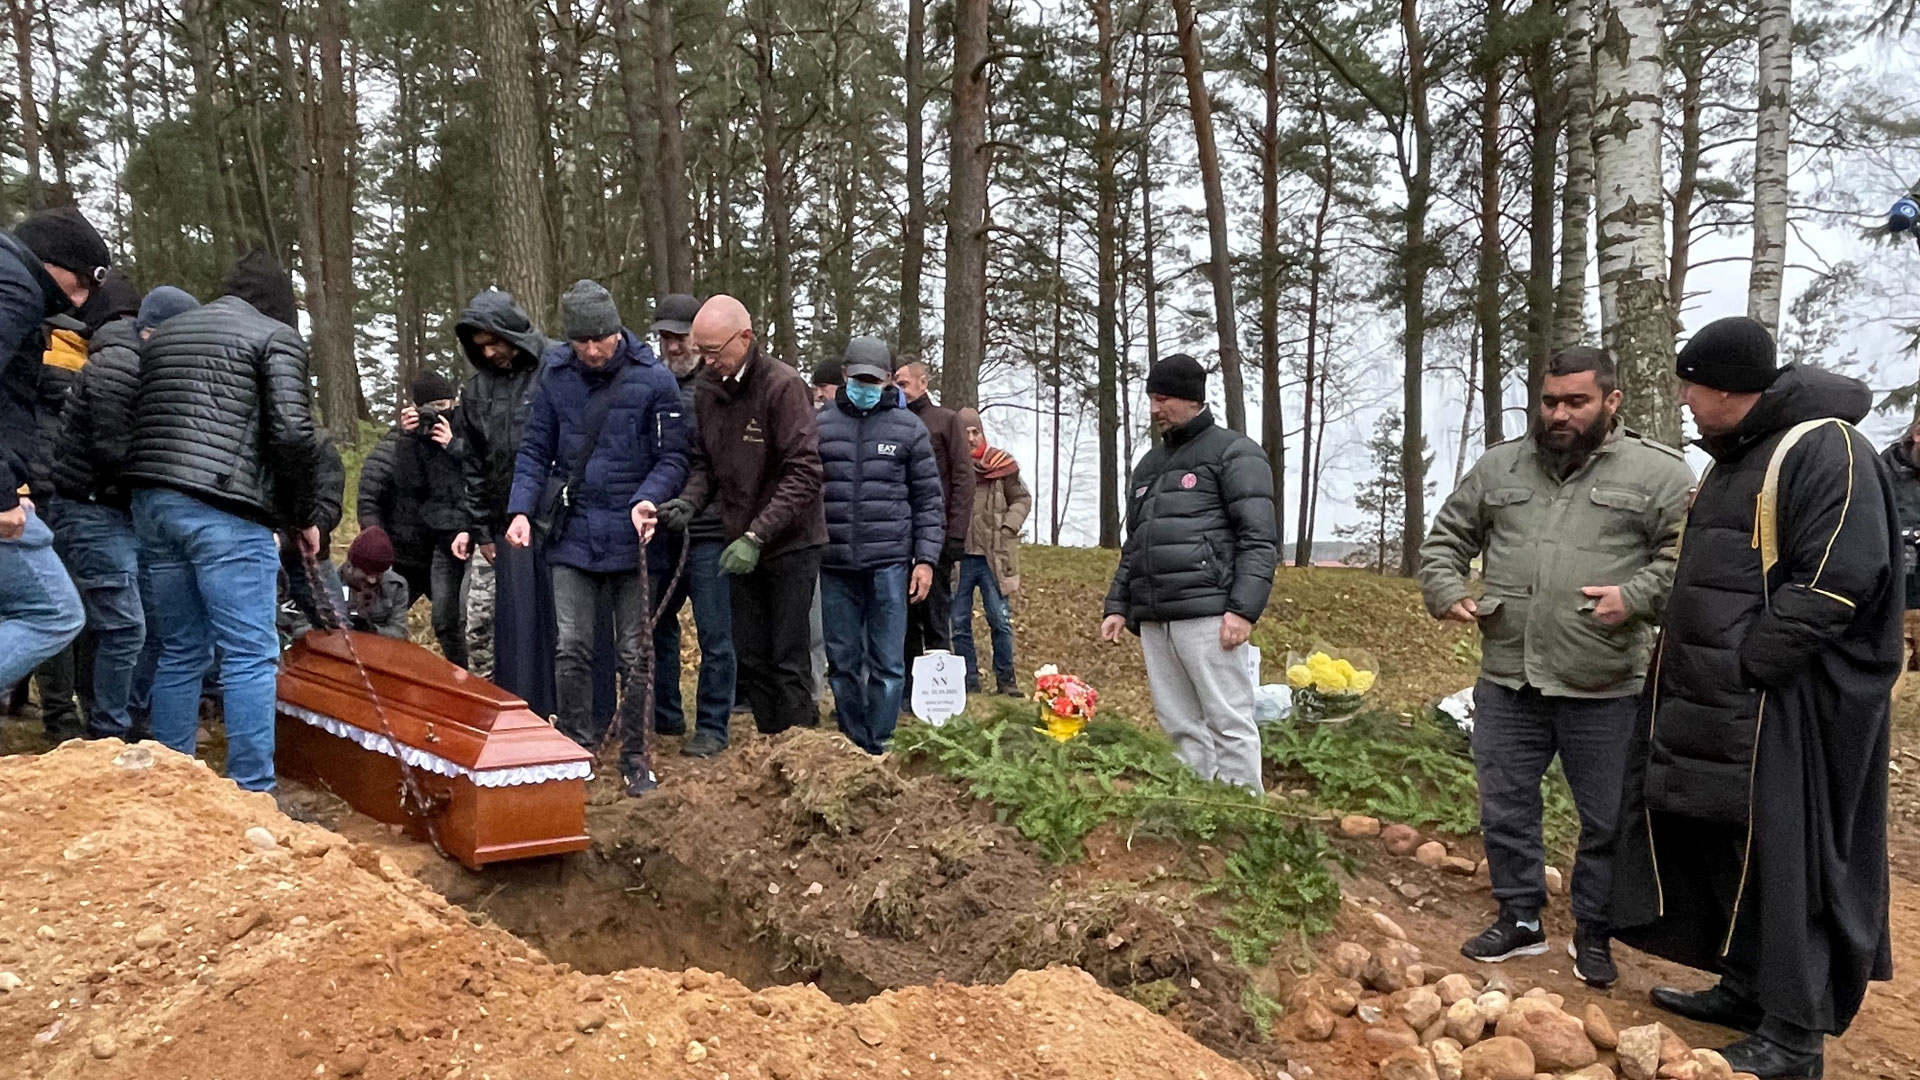 Beerdigungen an polnischer Grenze: „Weil einfach jeder ein Mensch ist“